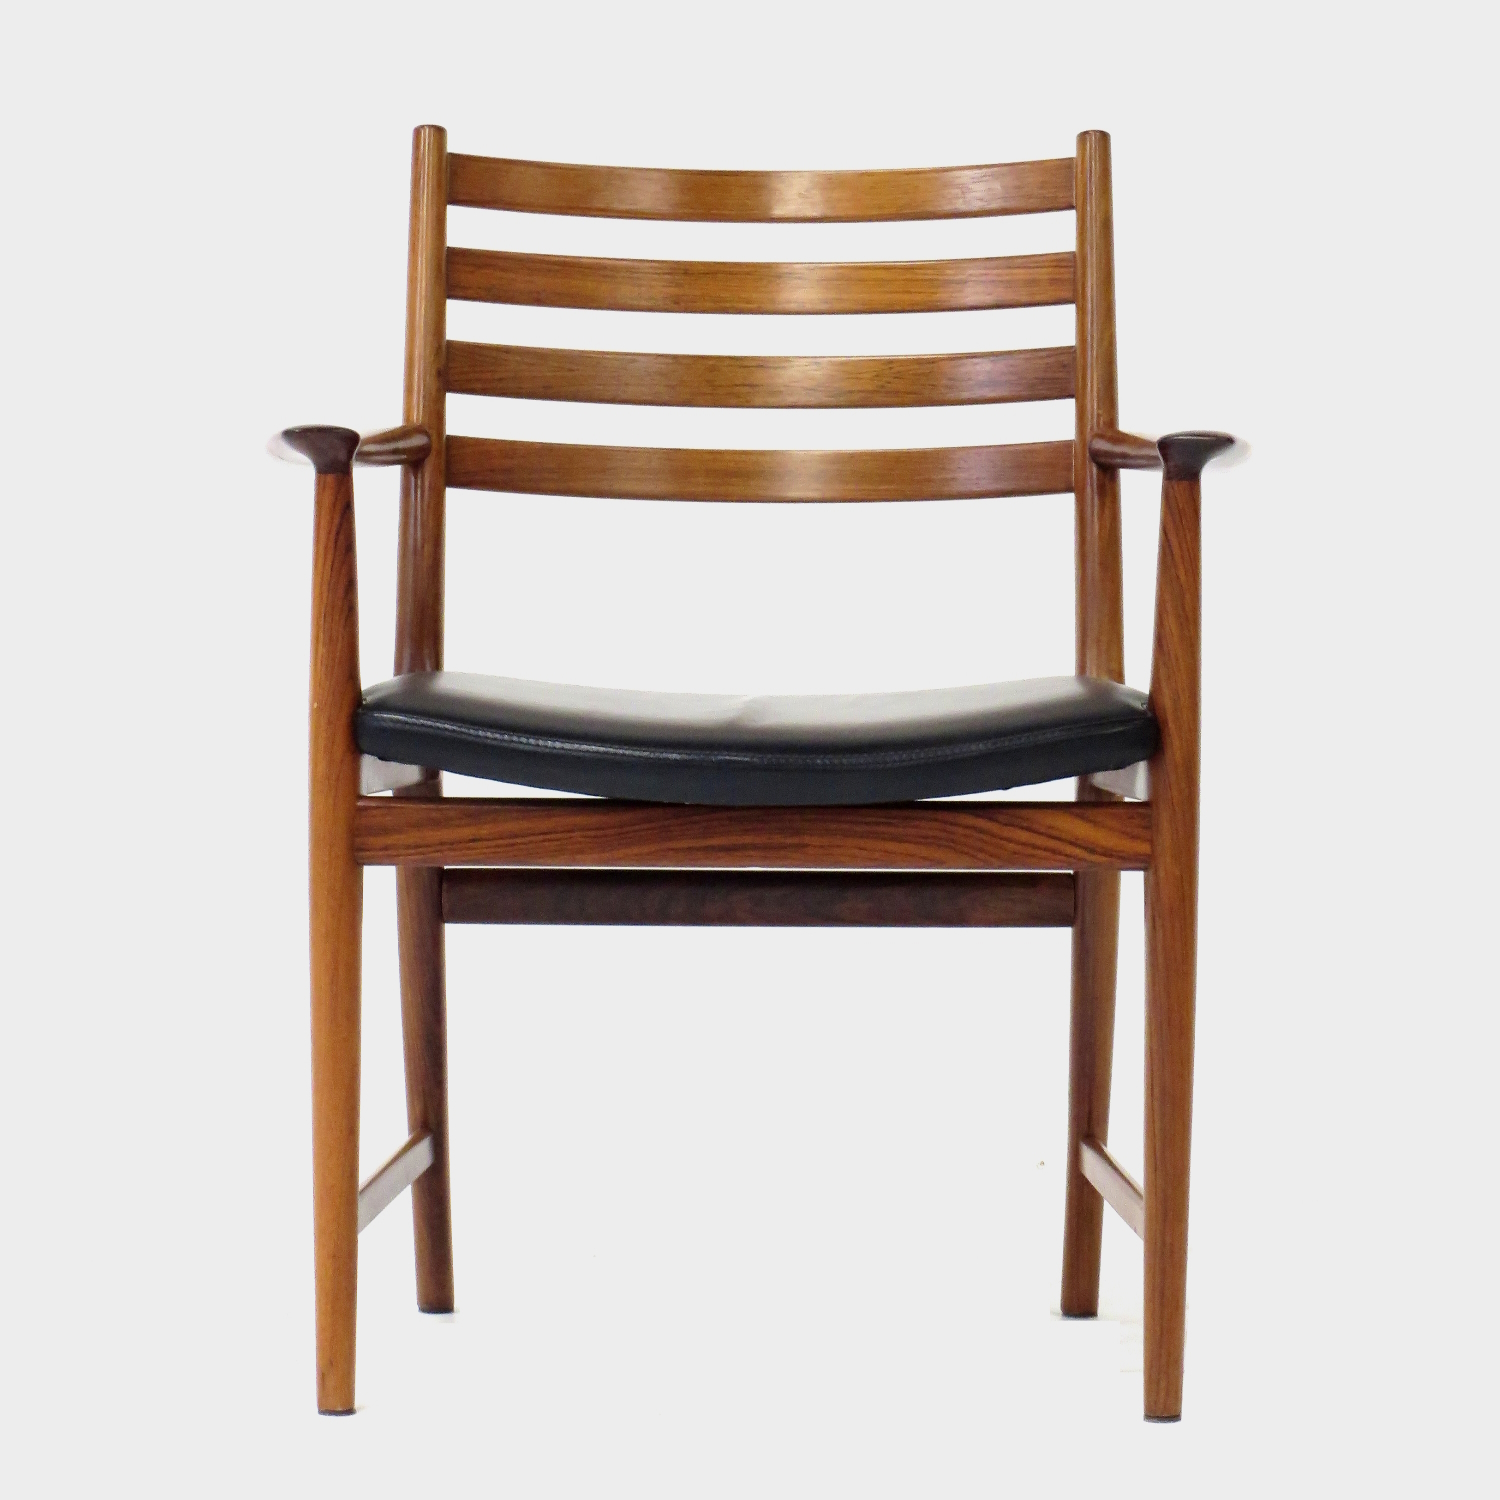 Foto van de voorkant van één van de twee palissander bureaustoelen / stoelen met armleuningen